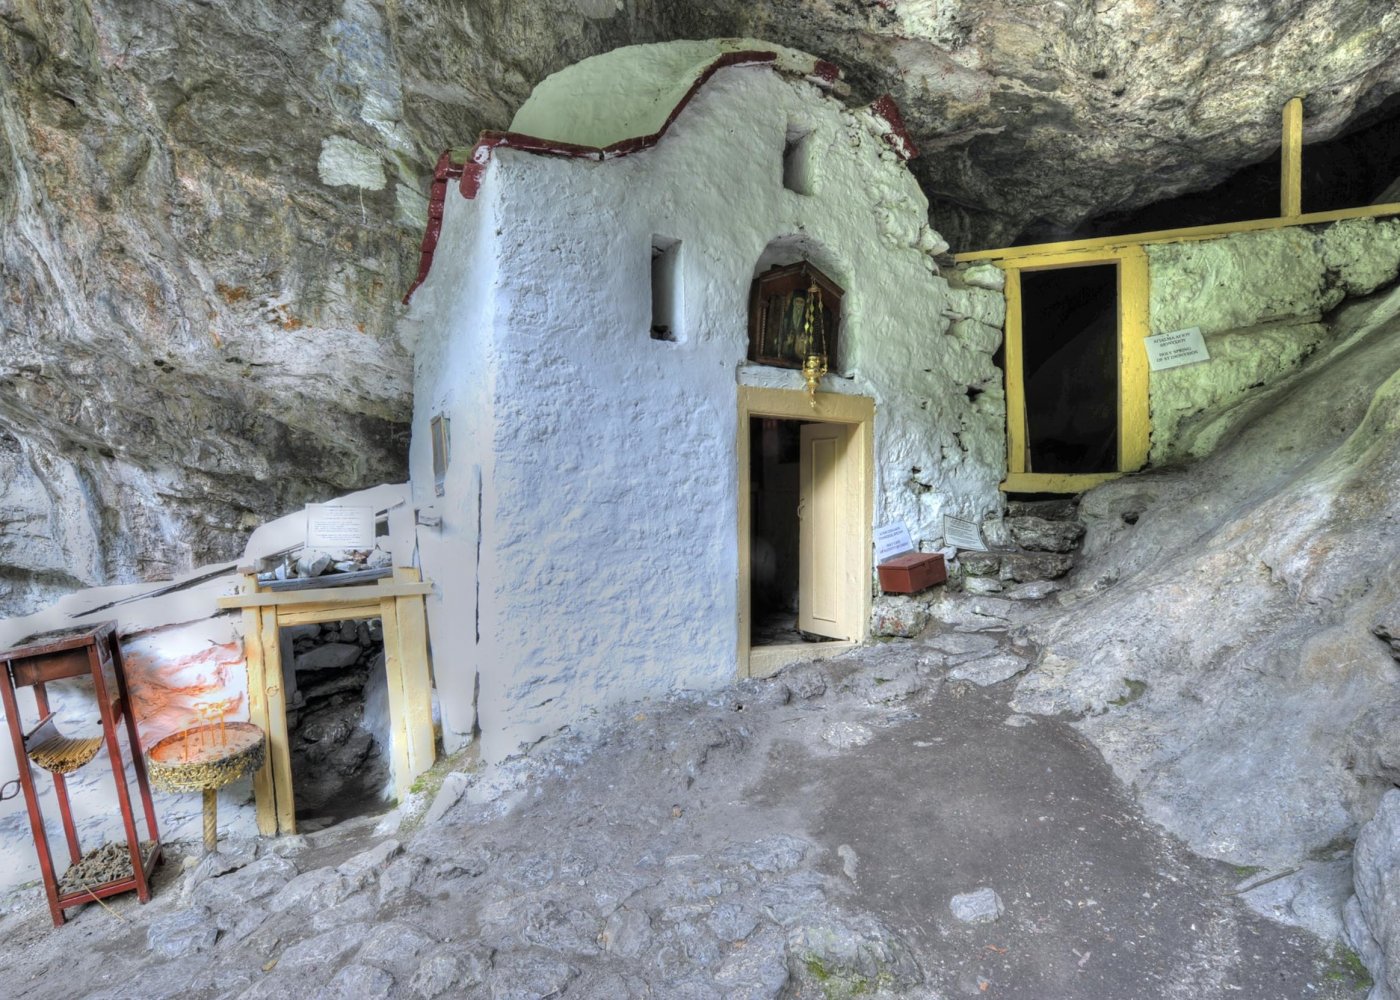 Άγιο Σπήλαιο Αγίου Διονυσίου εν Ολύμπω, Λιτόχωρο